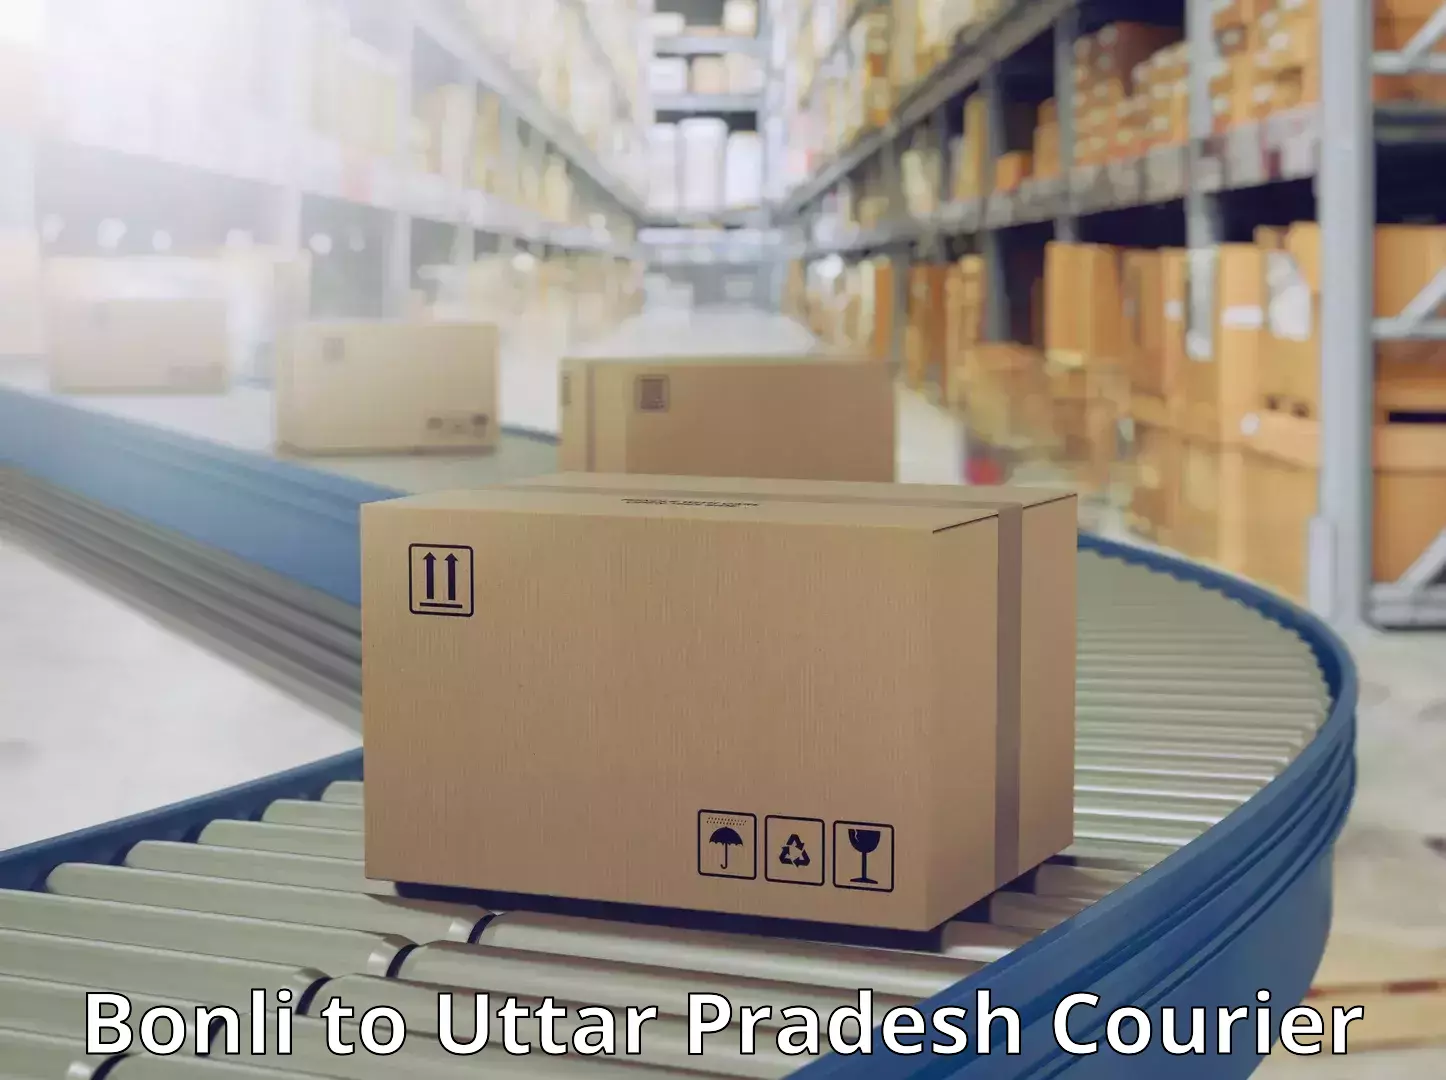 Global courier networks Bonli to Uttar Pradesh